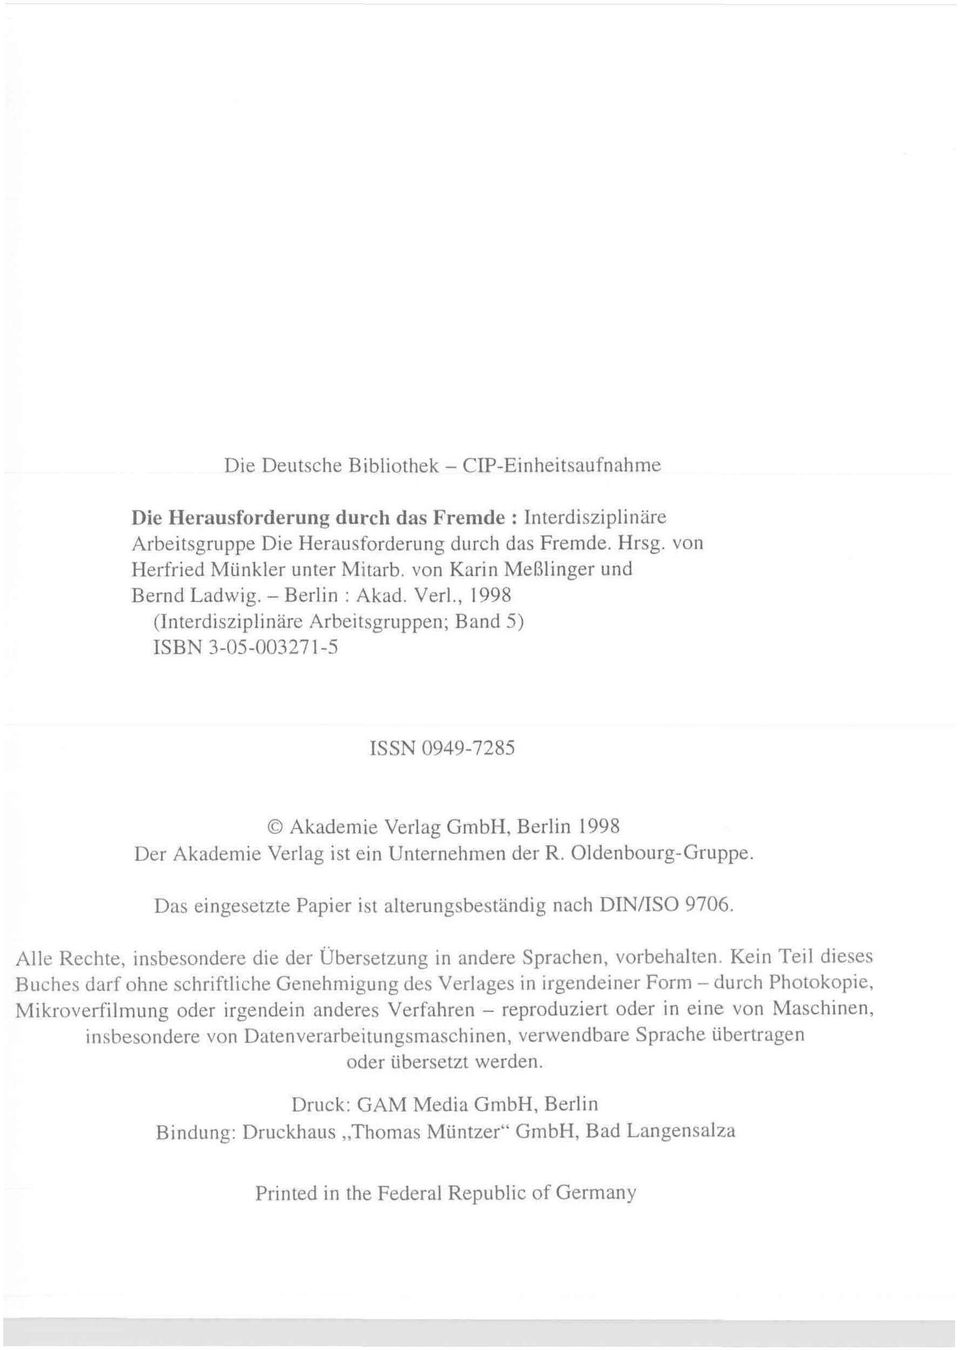 , 1998 (Interdisziplinäre Arbeitsgruppen; Band 5) ISBN 3-05-003271-5 ISSN 0949-7285 O Akademie Verlag GmbH, Berlin 1998 Der Akademie Verlag ist ein Unternehmen der R. Oldenbourg-Gruppe.